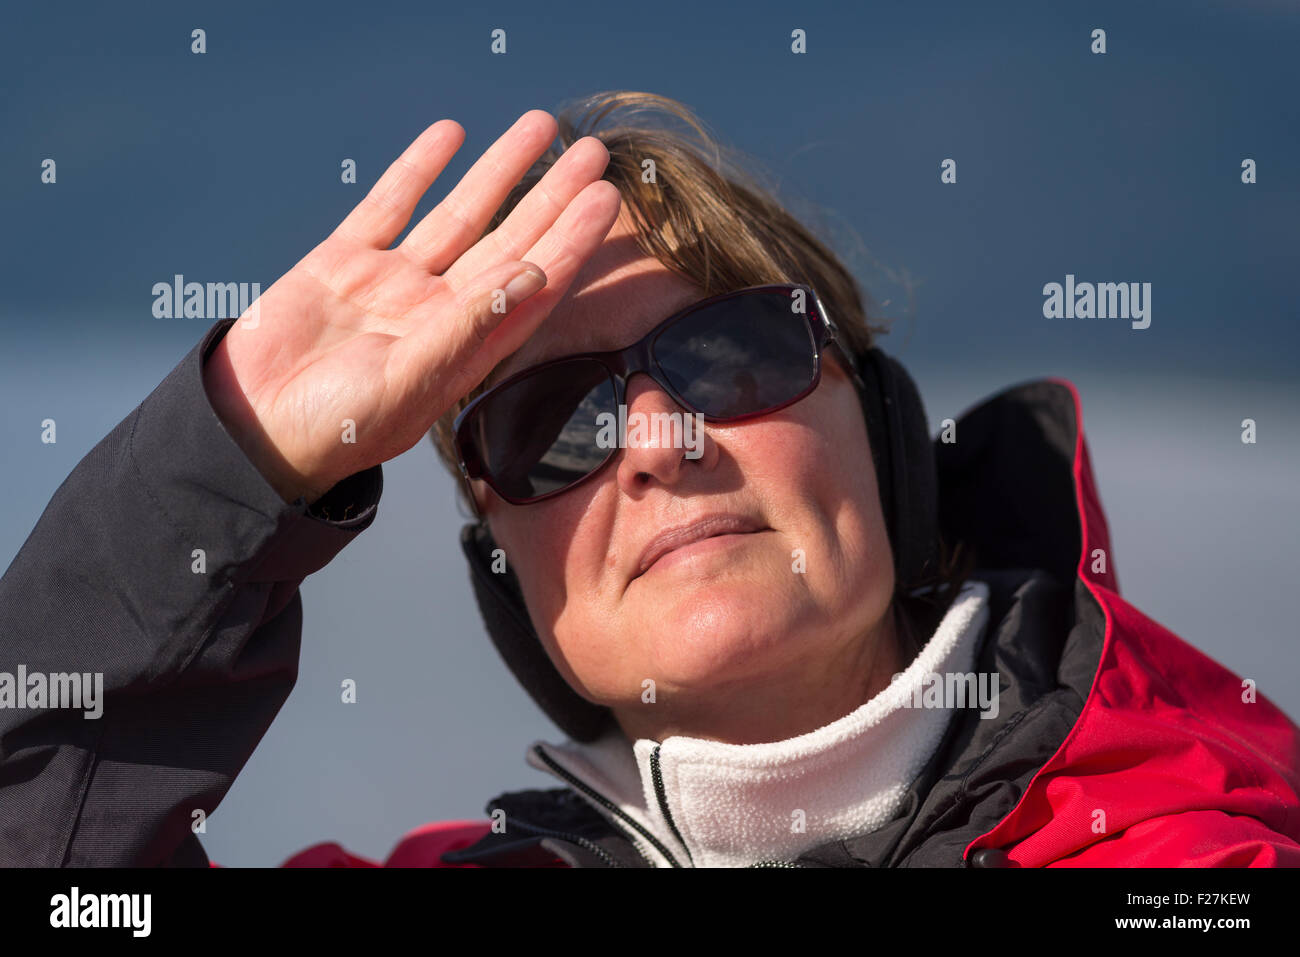 La donna la schermatura del sole dai suoi occhi come lei guarda fuori. Foto Stock